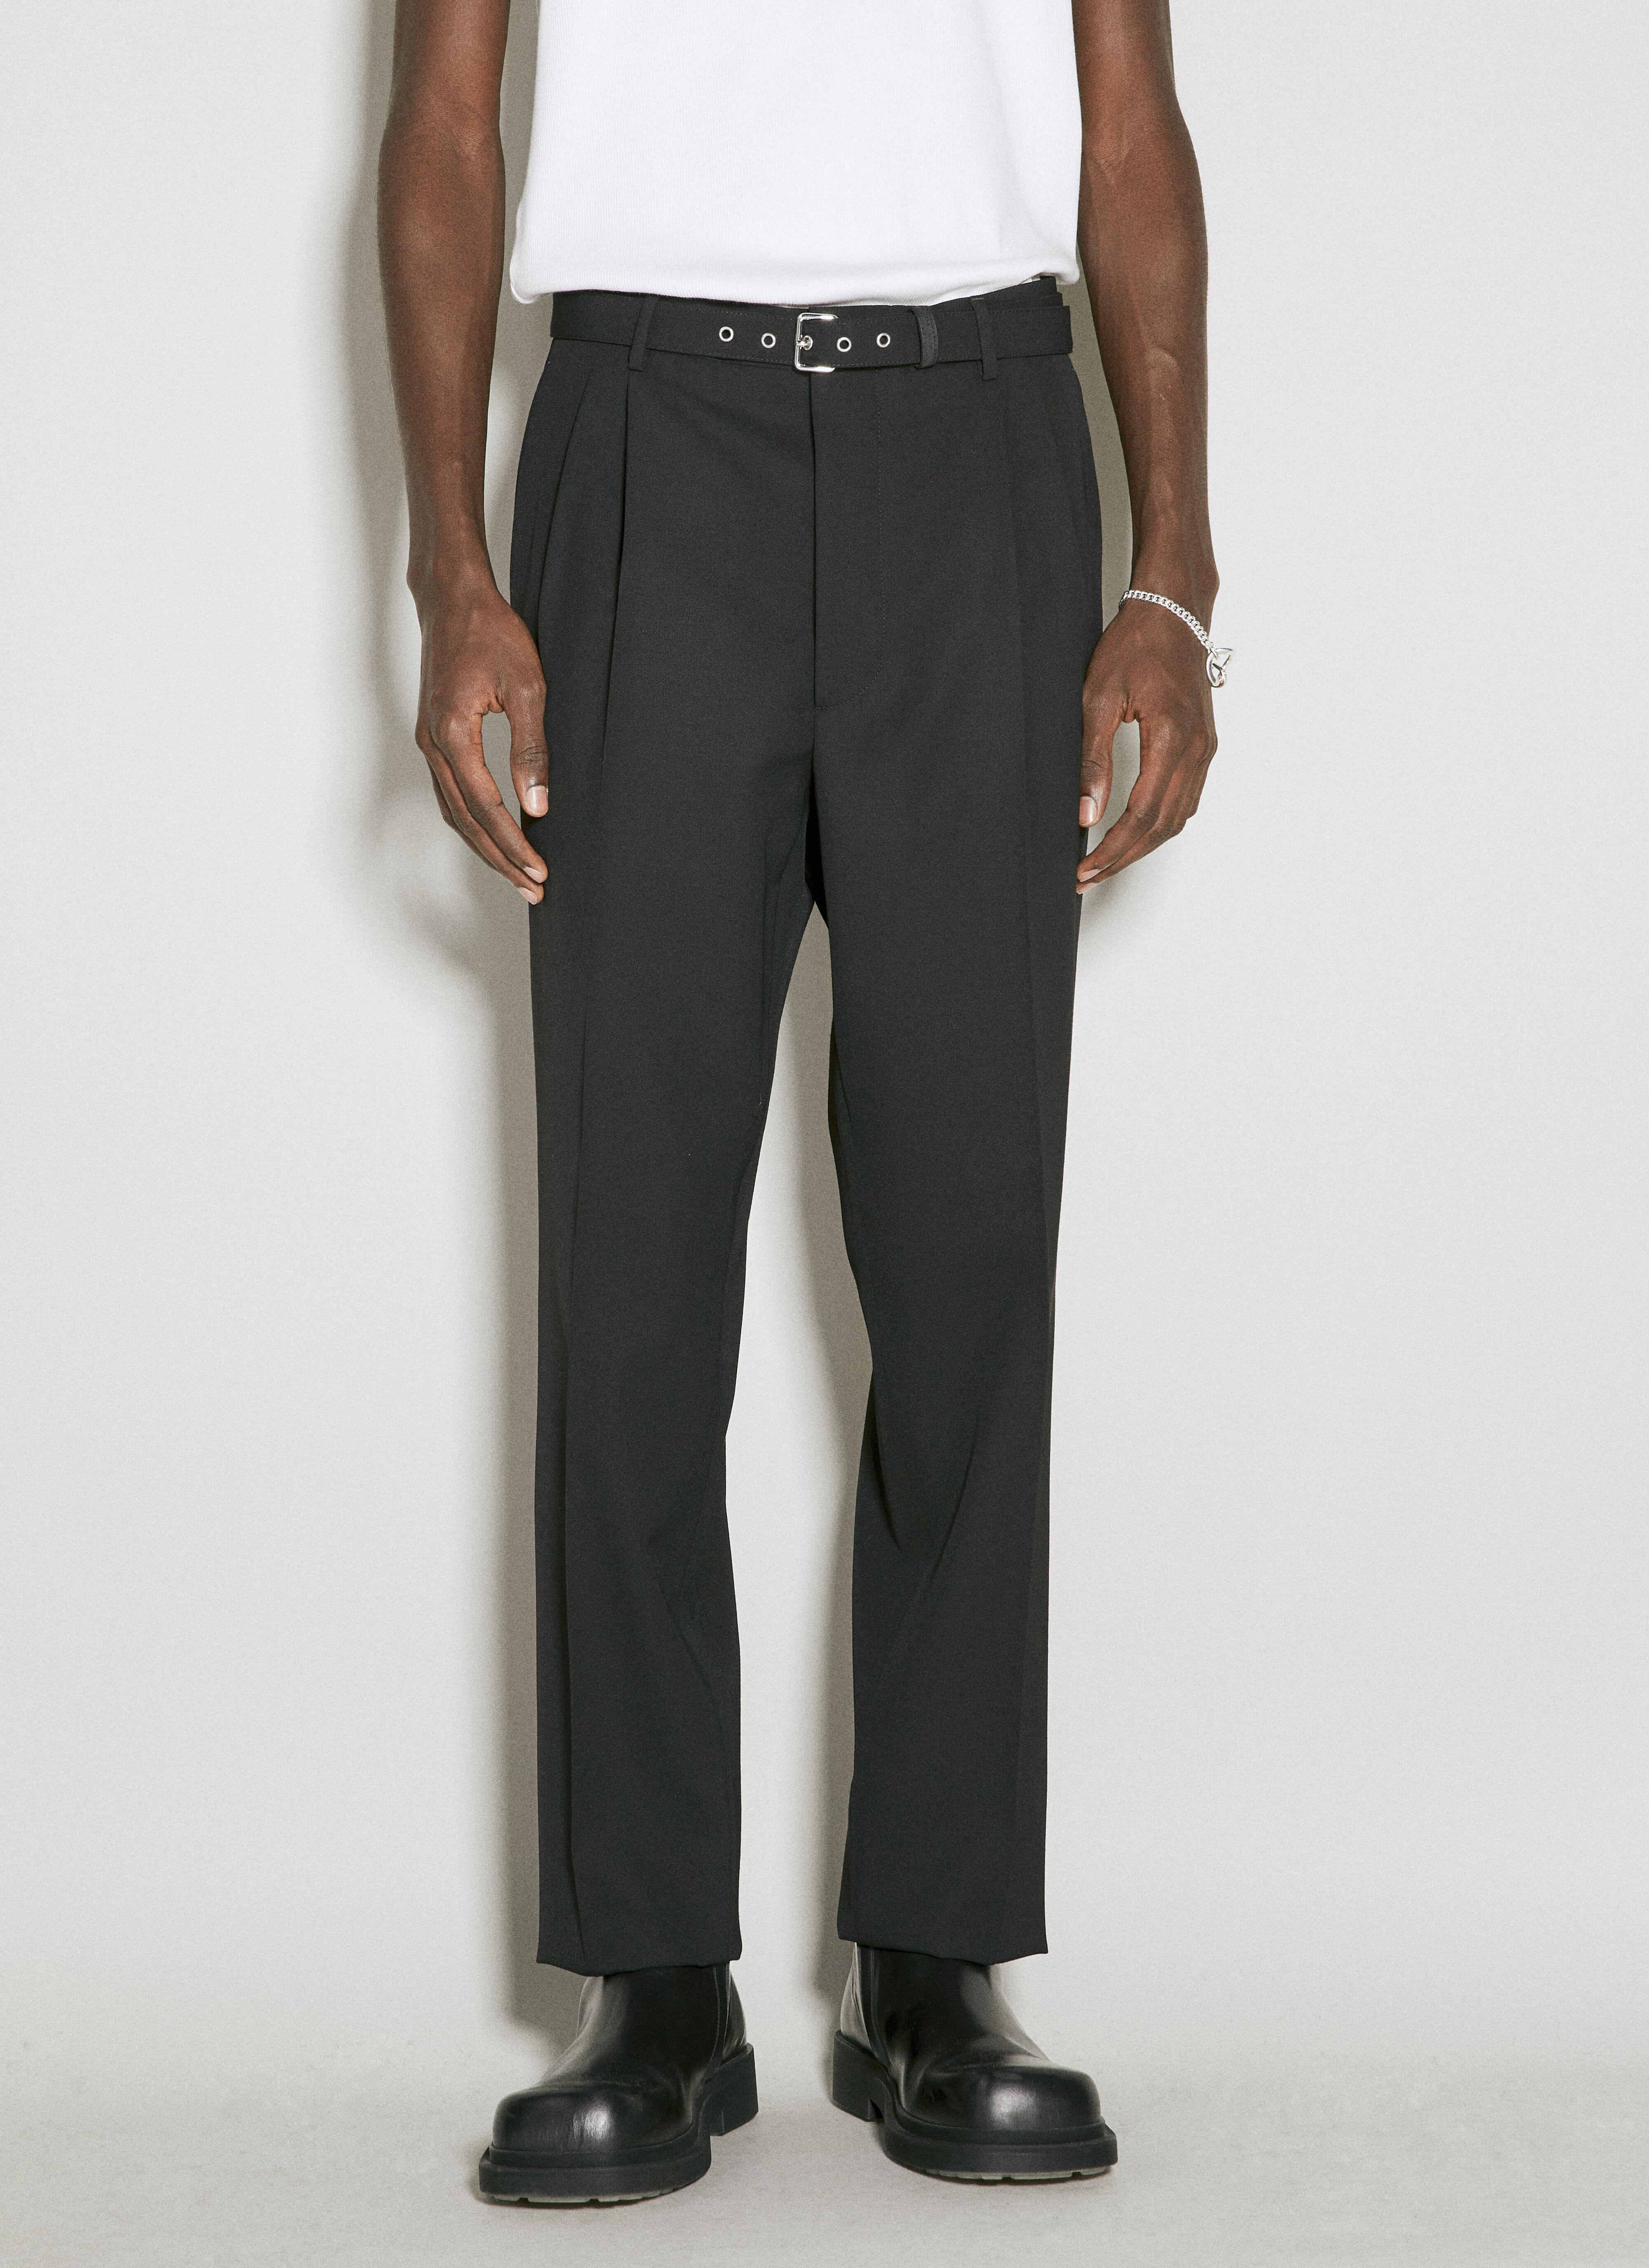 Vivienne Westwood Belted Wool Pants Black vvw0155001